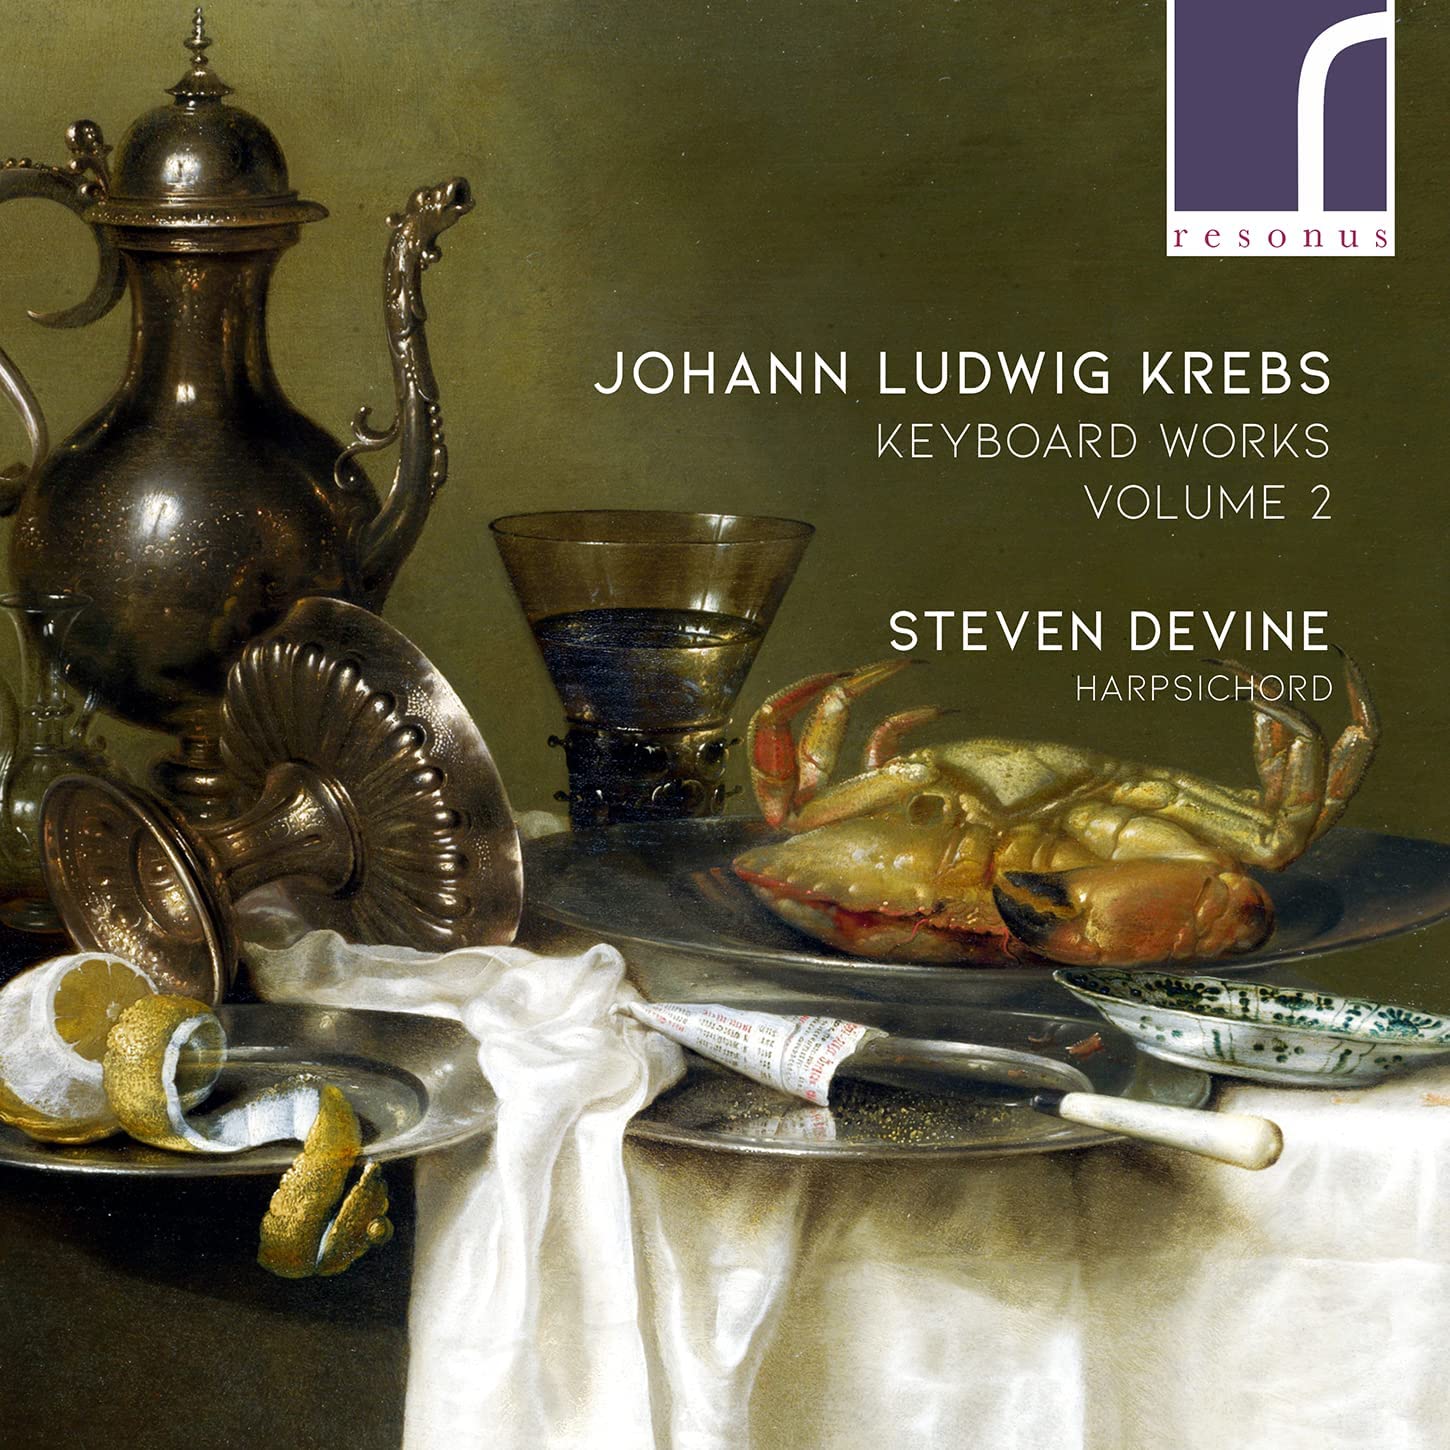 CD cover Krebs Keyboard music volume 2 Steven Devine